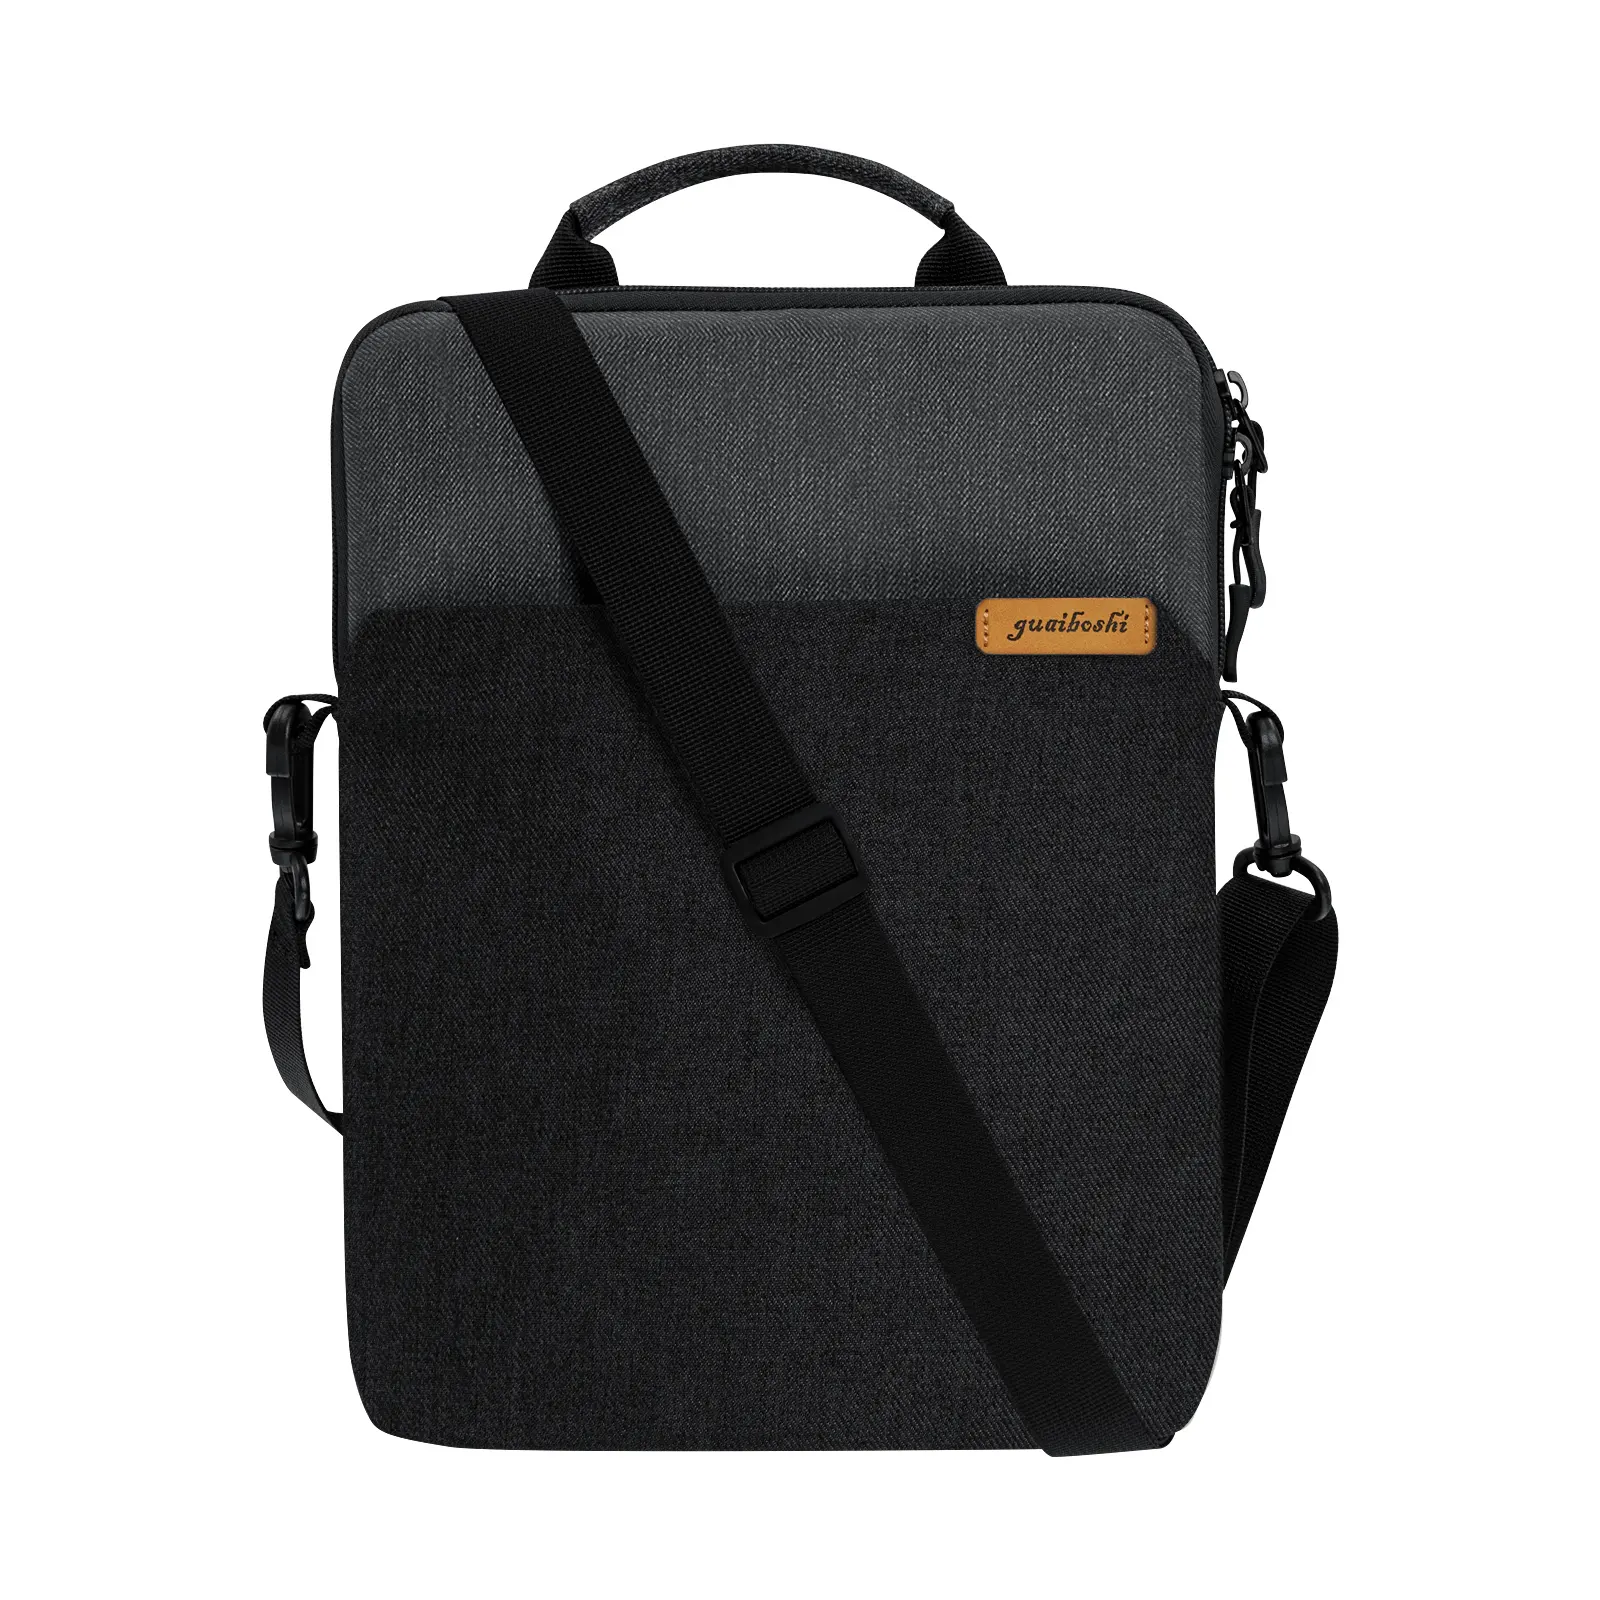 360 Protective Shockproof Sleeve notebook messenger shoulder bag nylon tablet bag for 11 inch iPad Pro